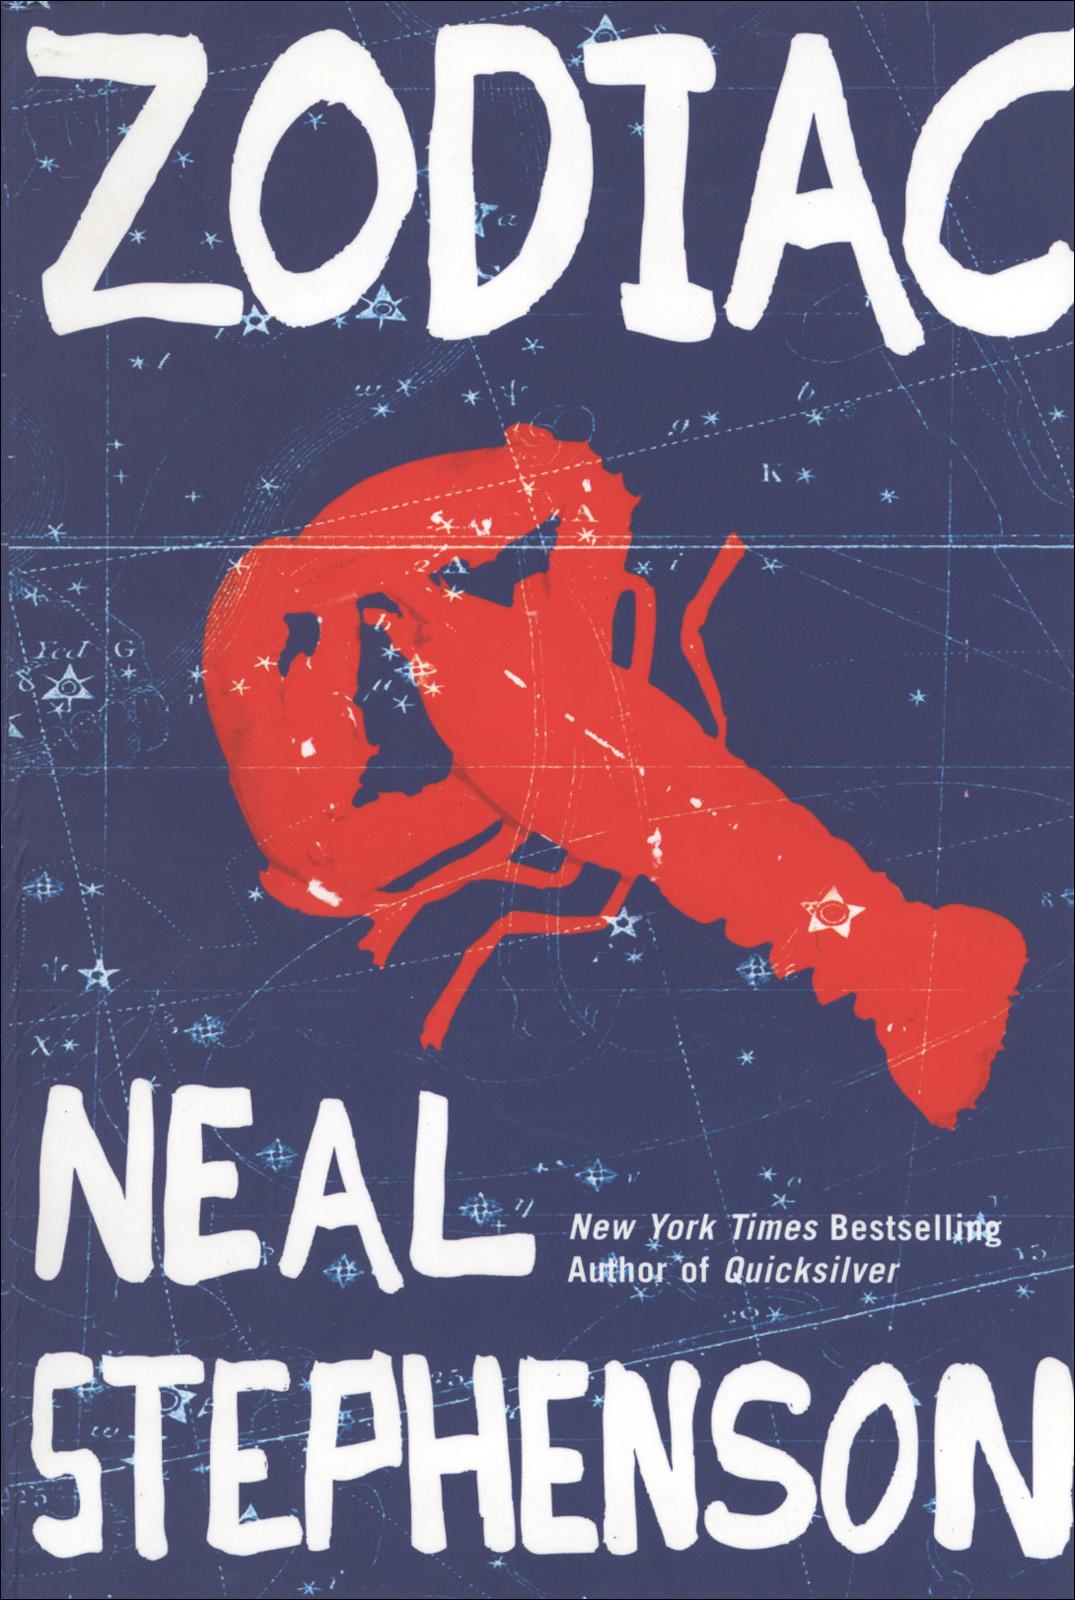 Zodiac (1988) by Neal Stephenson